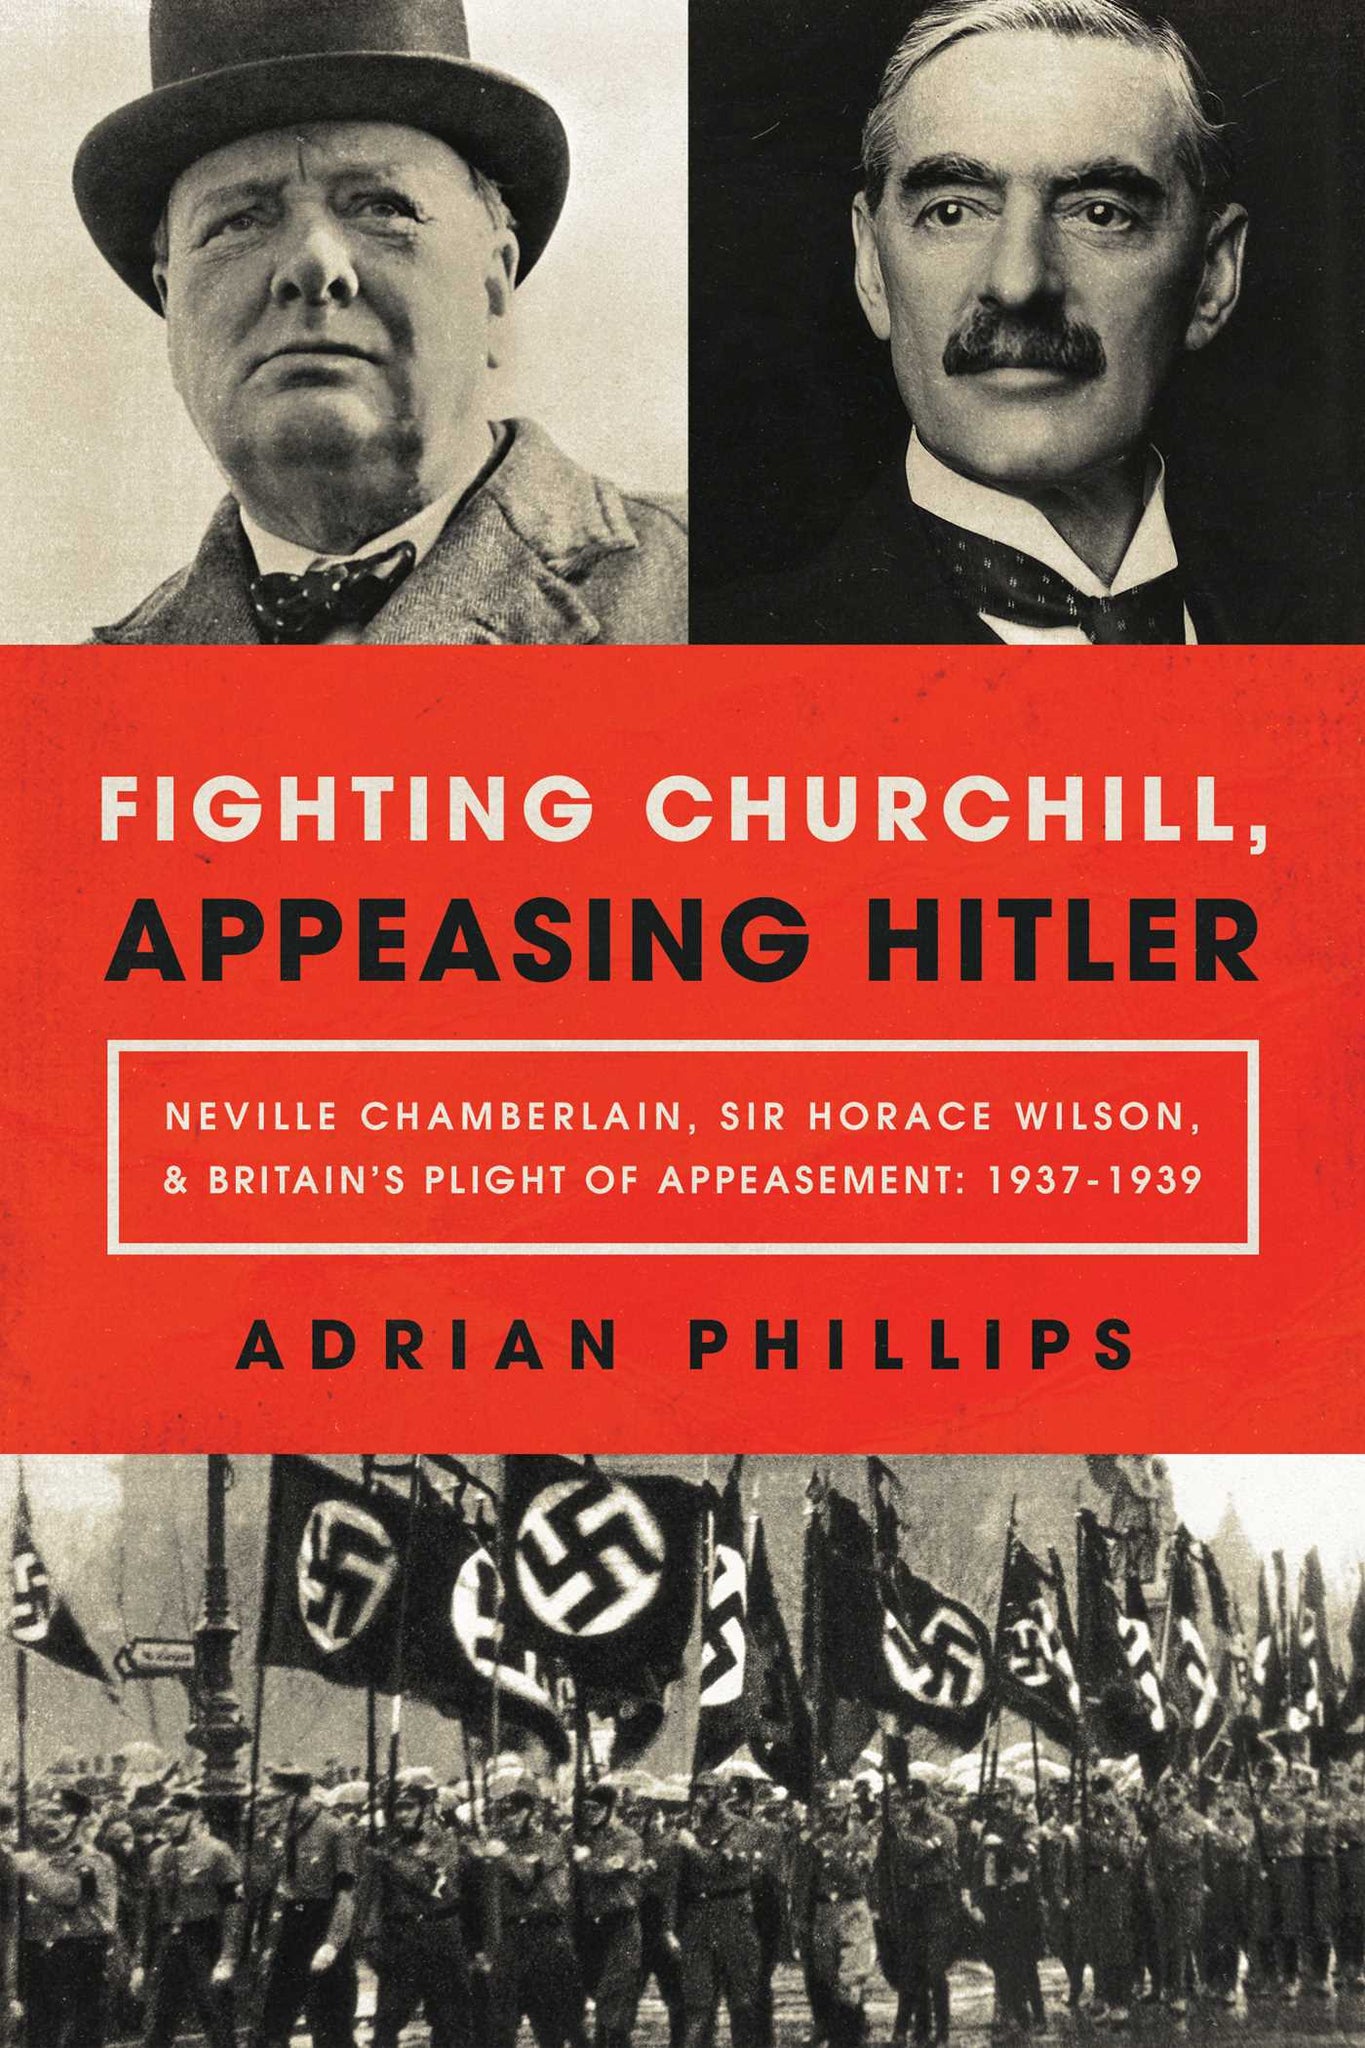 Fighting Churchill, Appeasing Hitler : Neville Chamberlain, Sir Horace Wilson, & Britain's Plight of Appeasement: 1937-1939